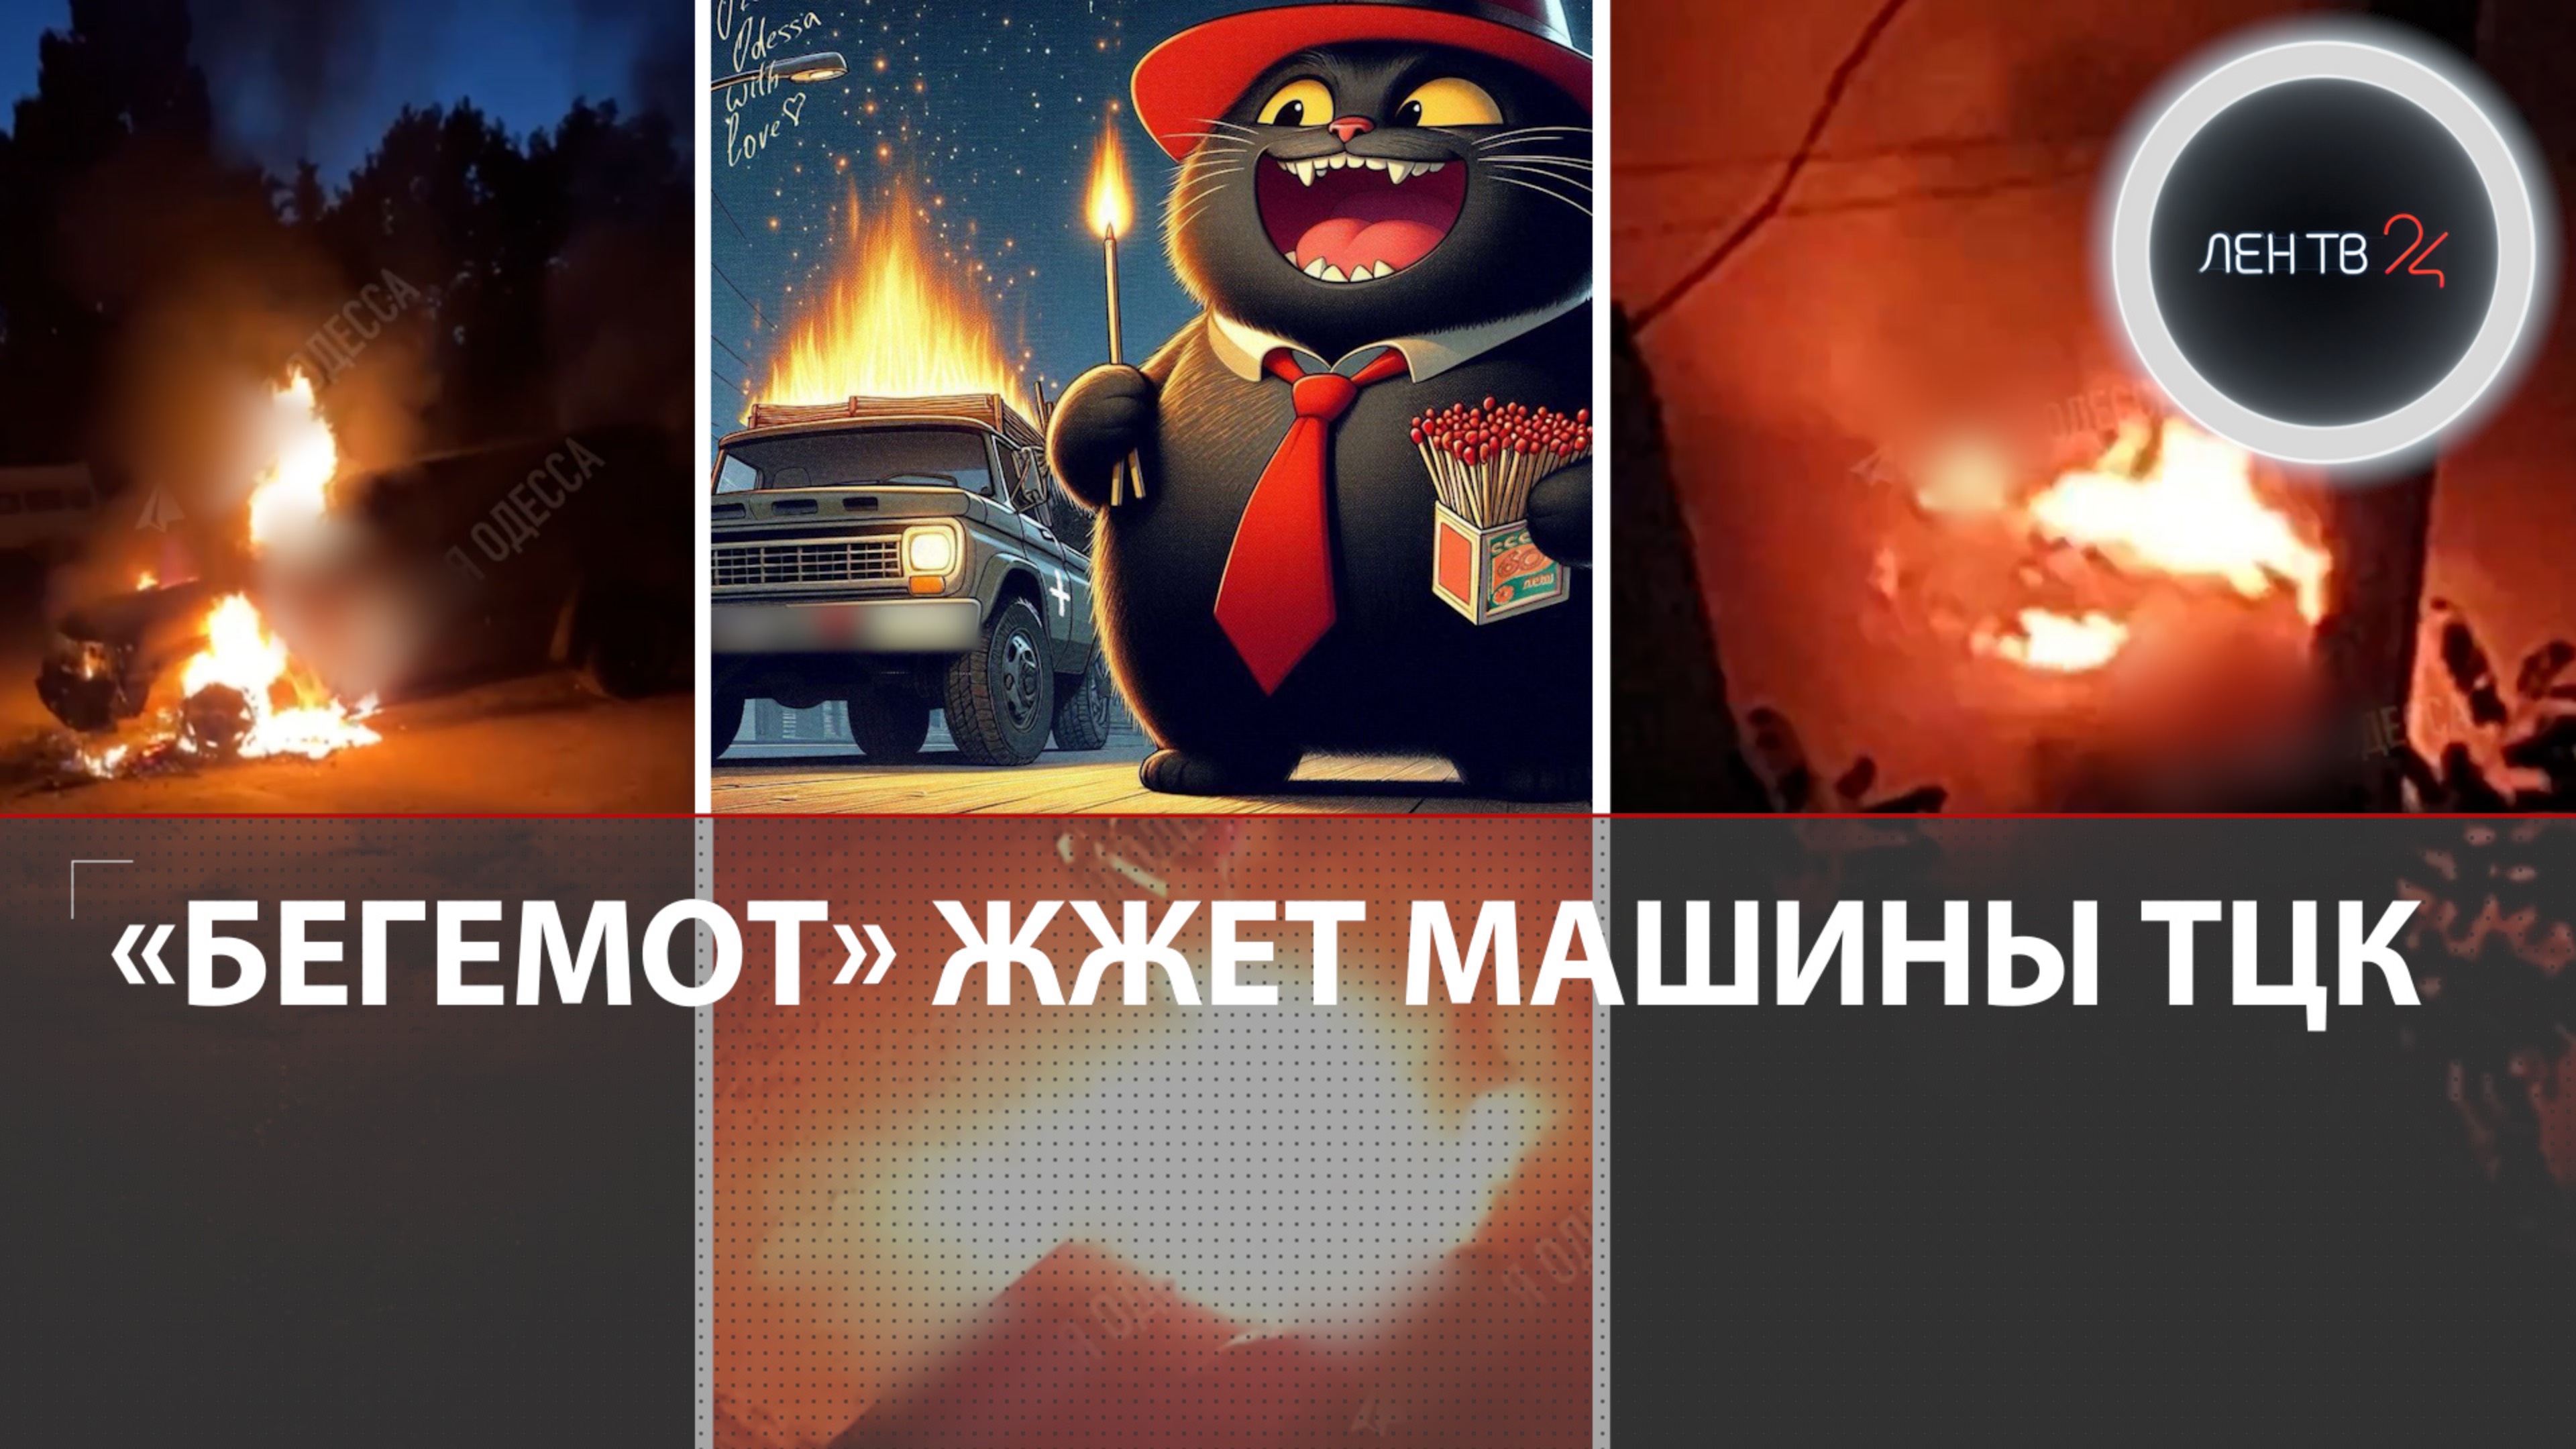 «Кот Бегемот» мстит ТЦК | Машины украинских военных горят в Одессе почти каждую ночь